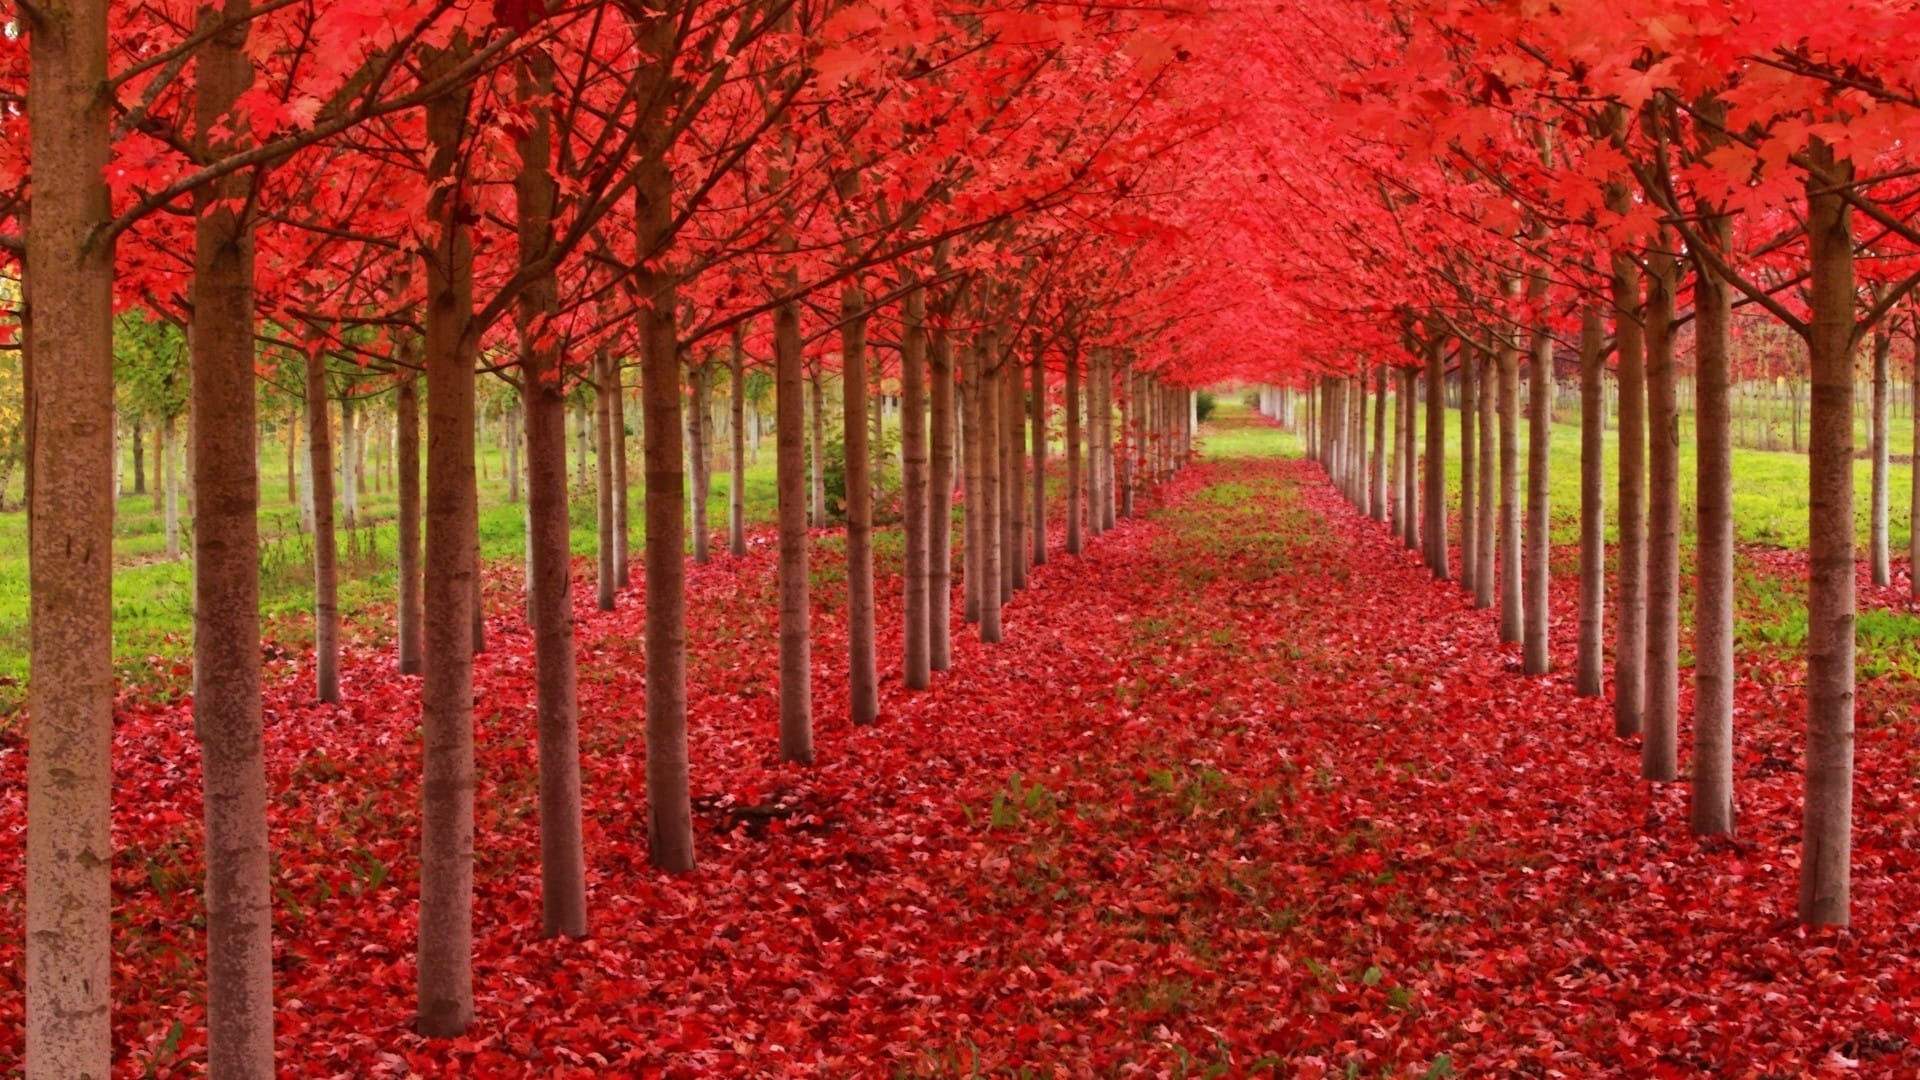 深秋时节枫林似火红叶如霞唯美意境桌面壁纸